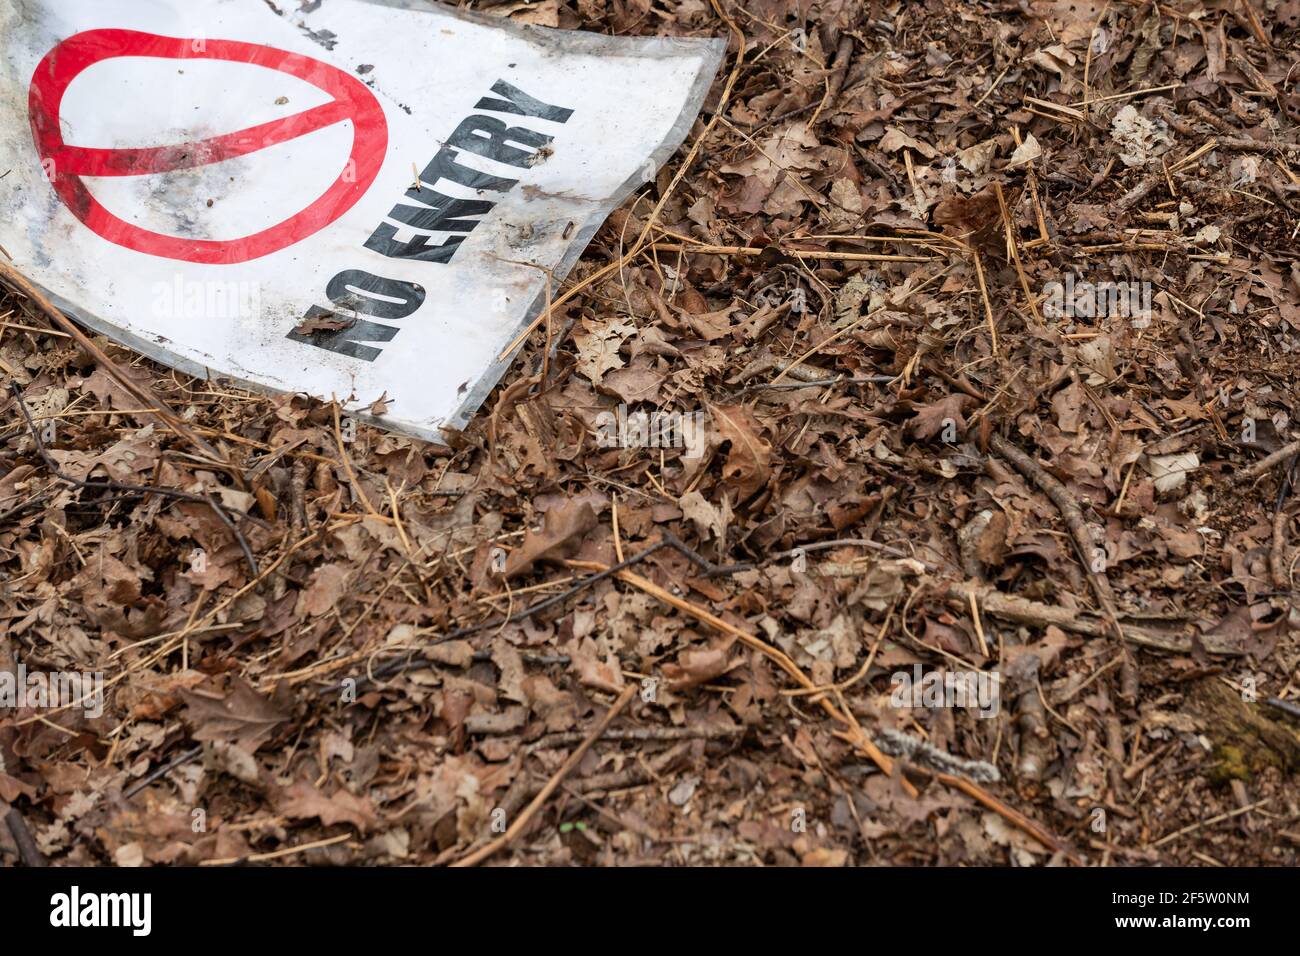 Scartato, makeshift Nessun segno di ingresso visto su una coperta di foglie essiccate situato su un pavimento di Forrest. Foto Stock